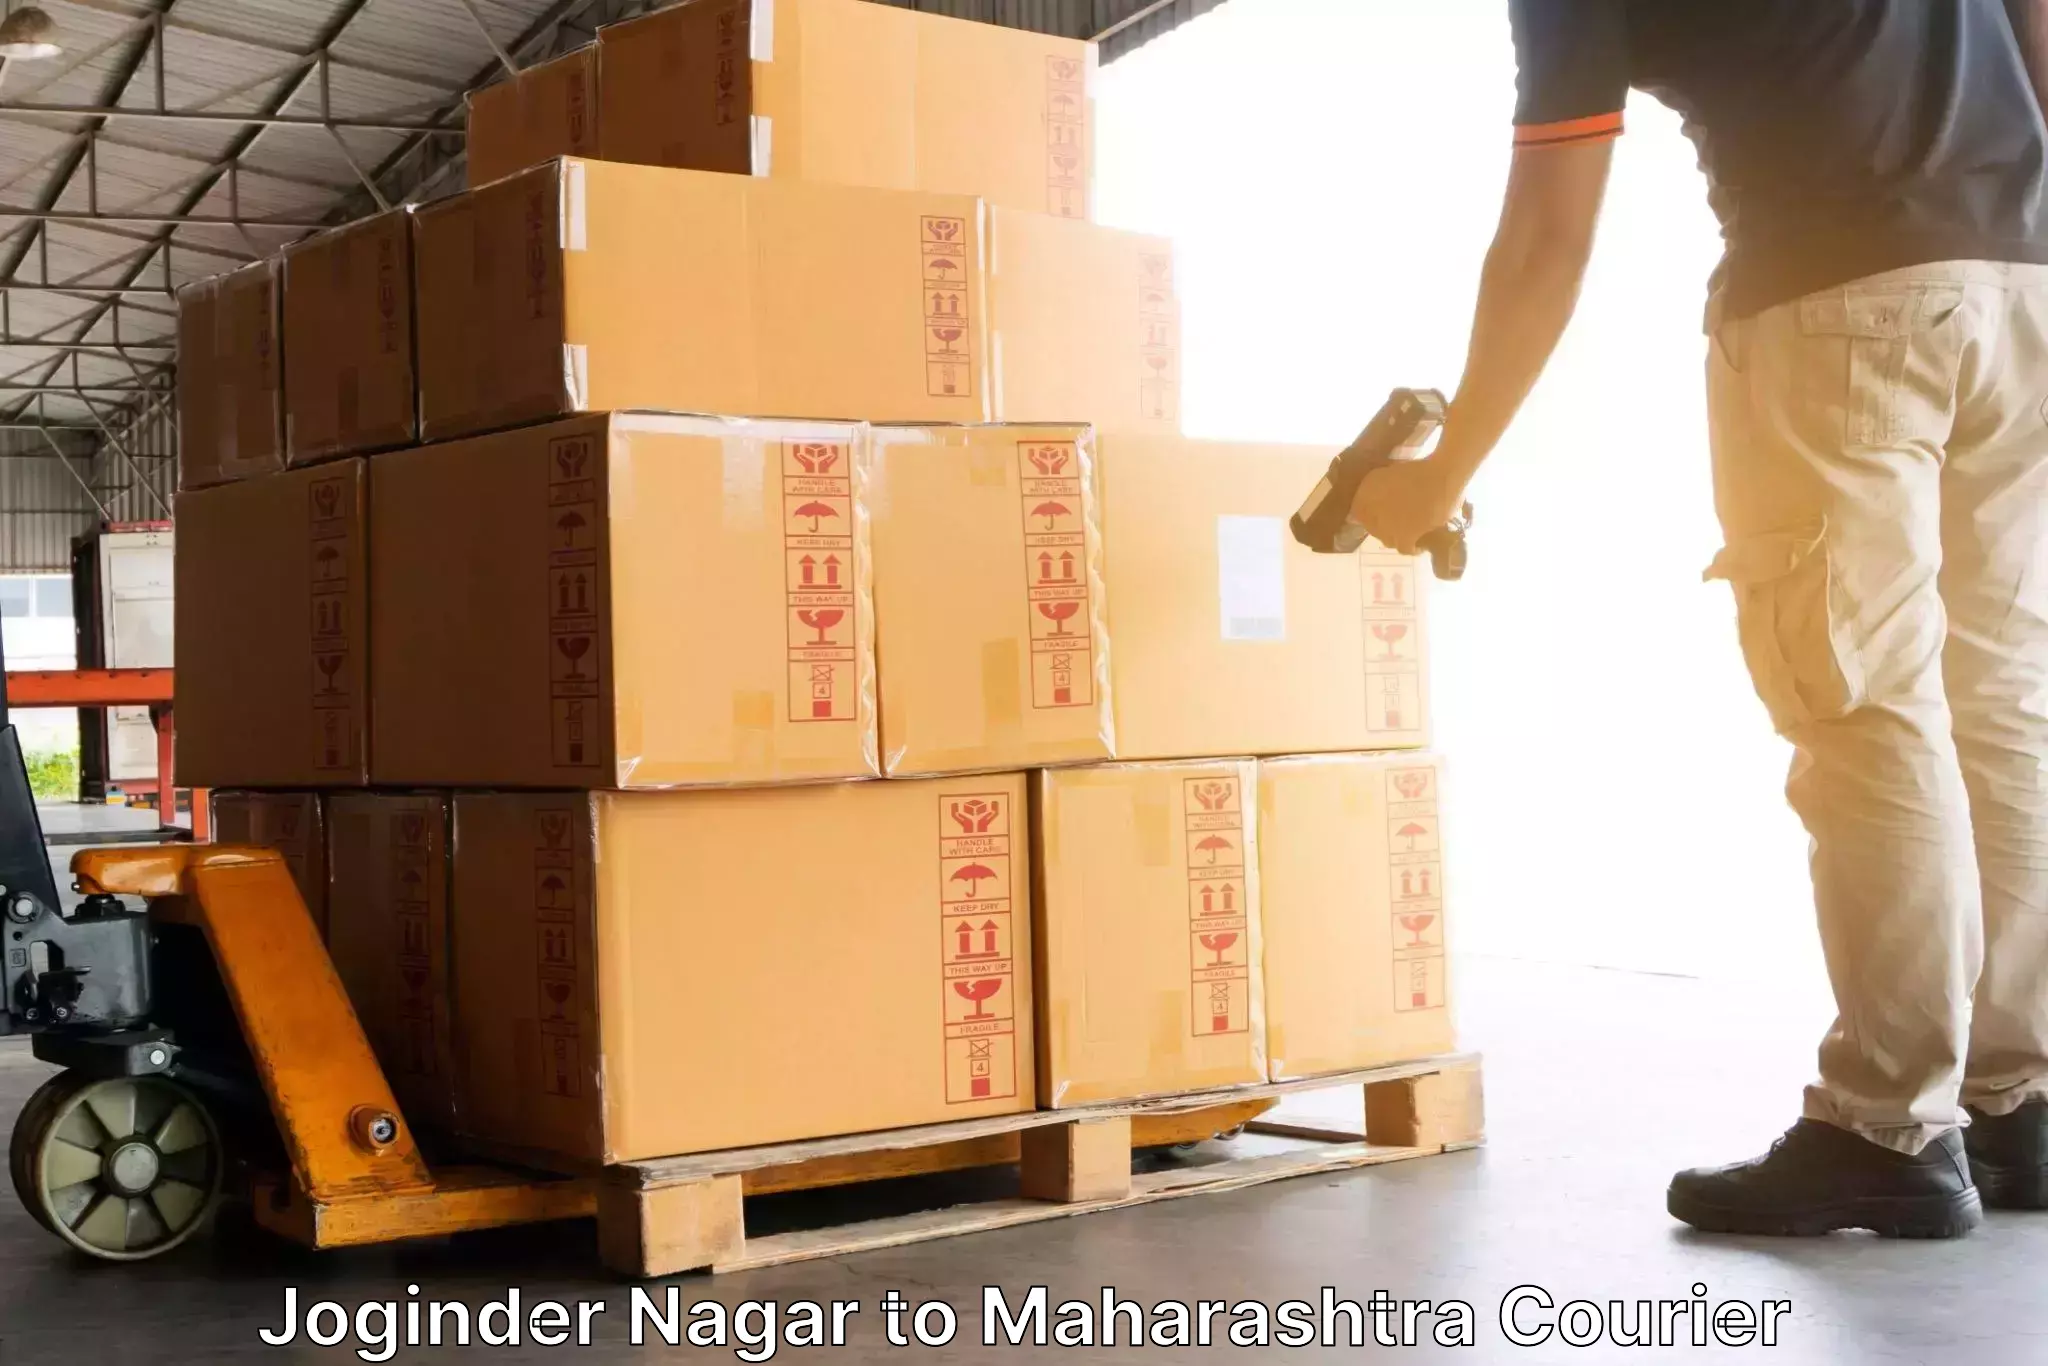 Fast delivery service Joginder Nagar to Aurangabad